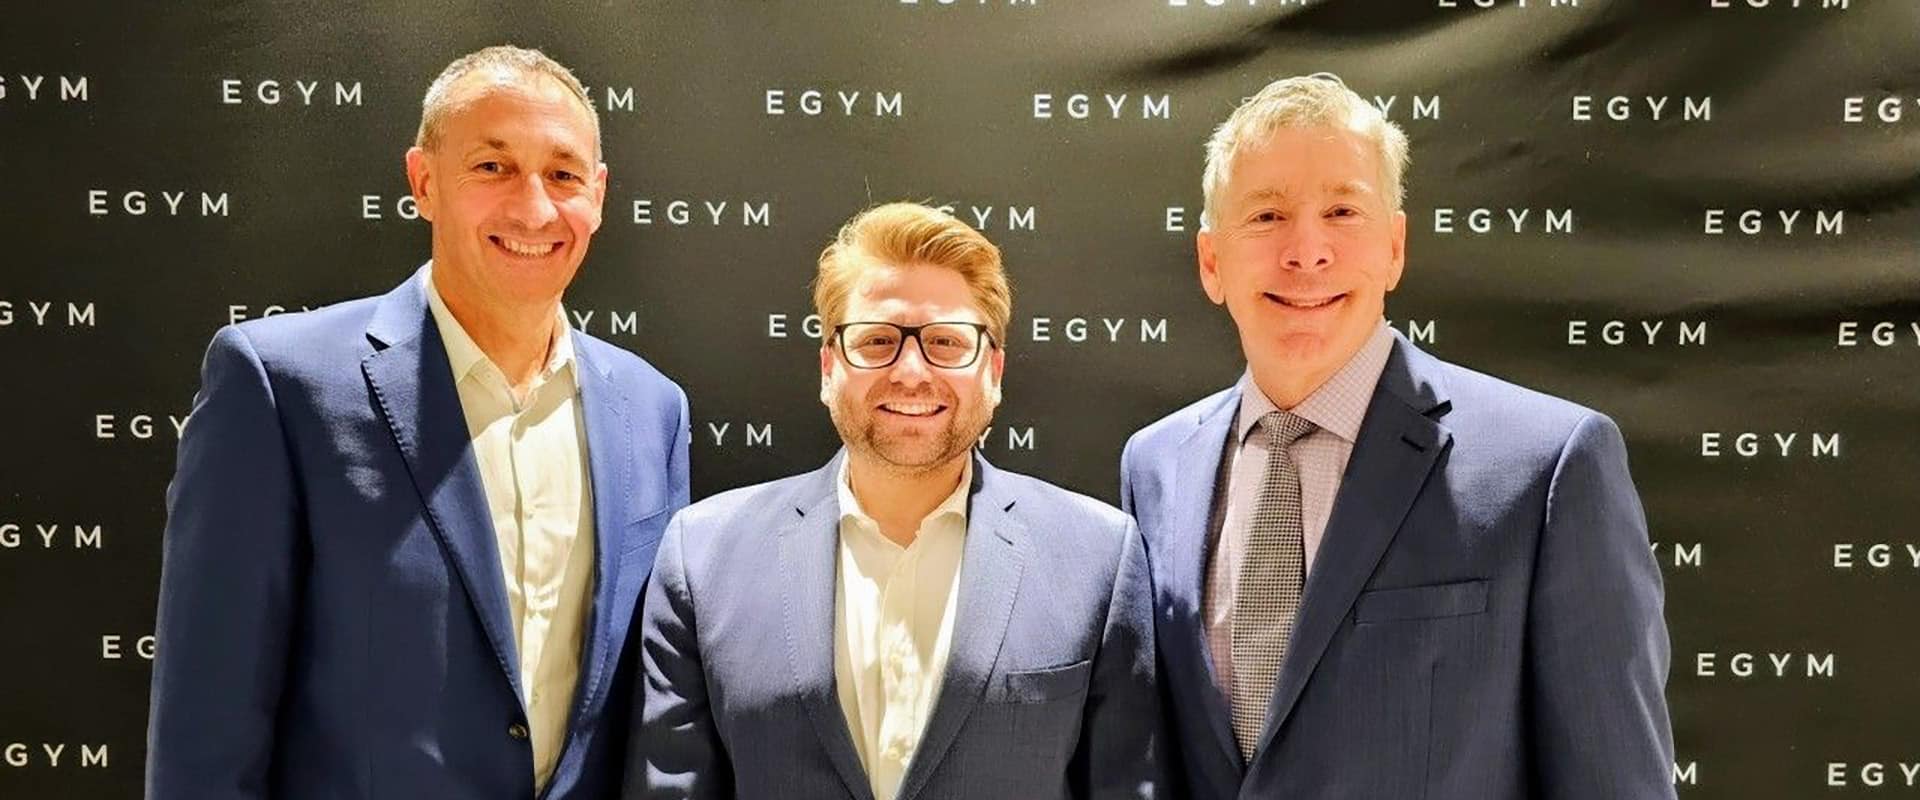 EGYM accueille Rob Barker (gauche) et Chris Clawson (droite) dans son équipe de management